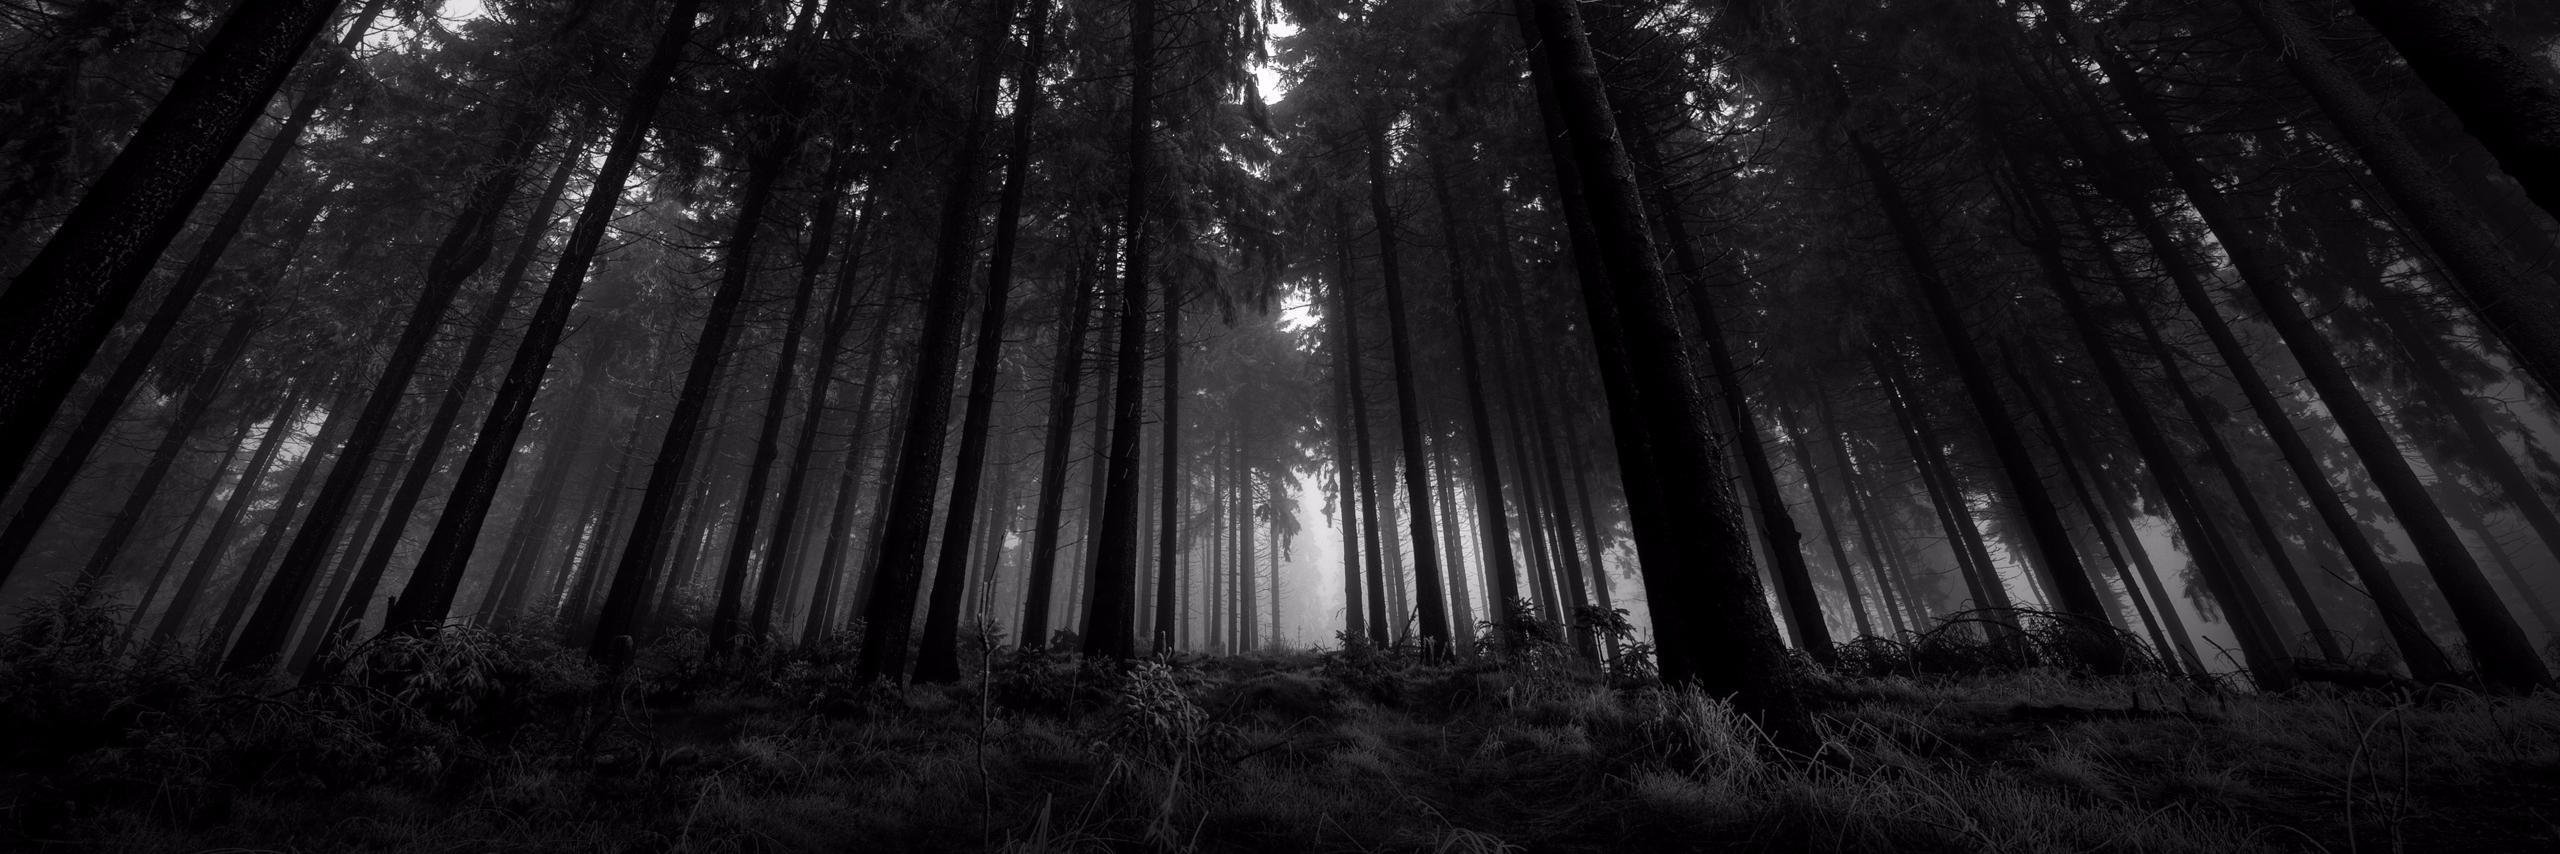 Обложки для вк профиля 1920х640. Мрачный лес. «Ночь в лесу». Природа. Мрачный фон.